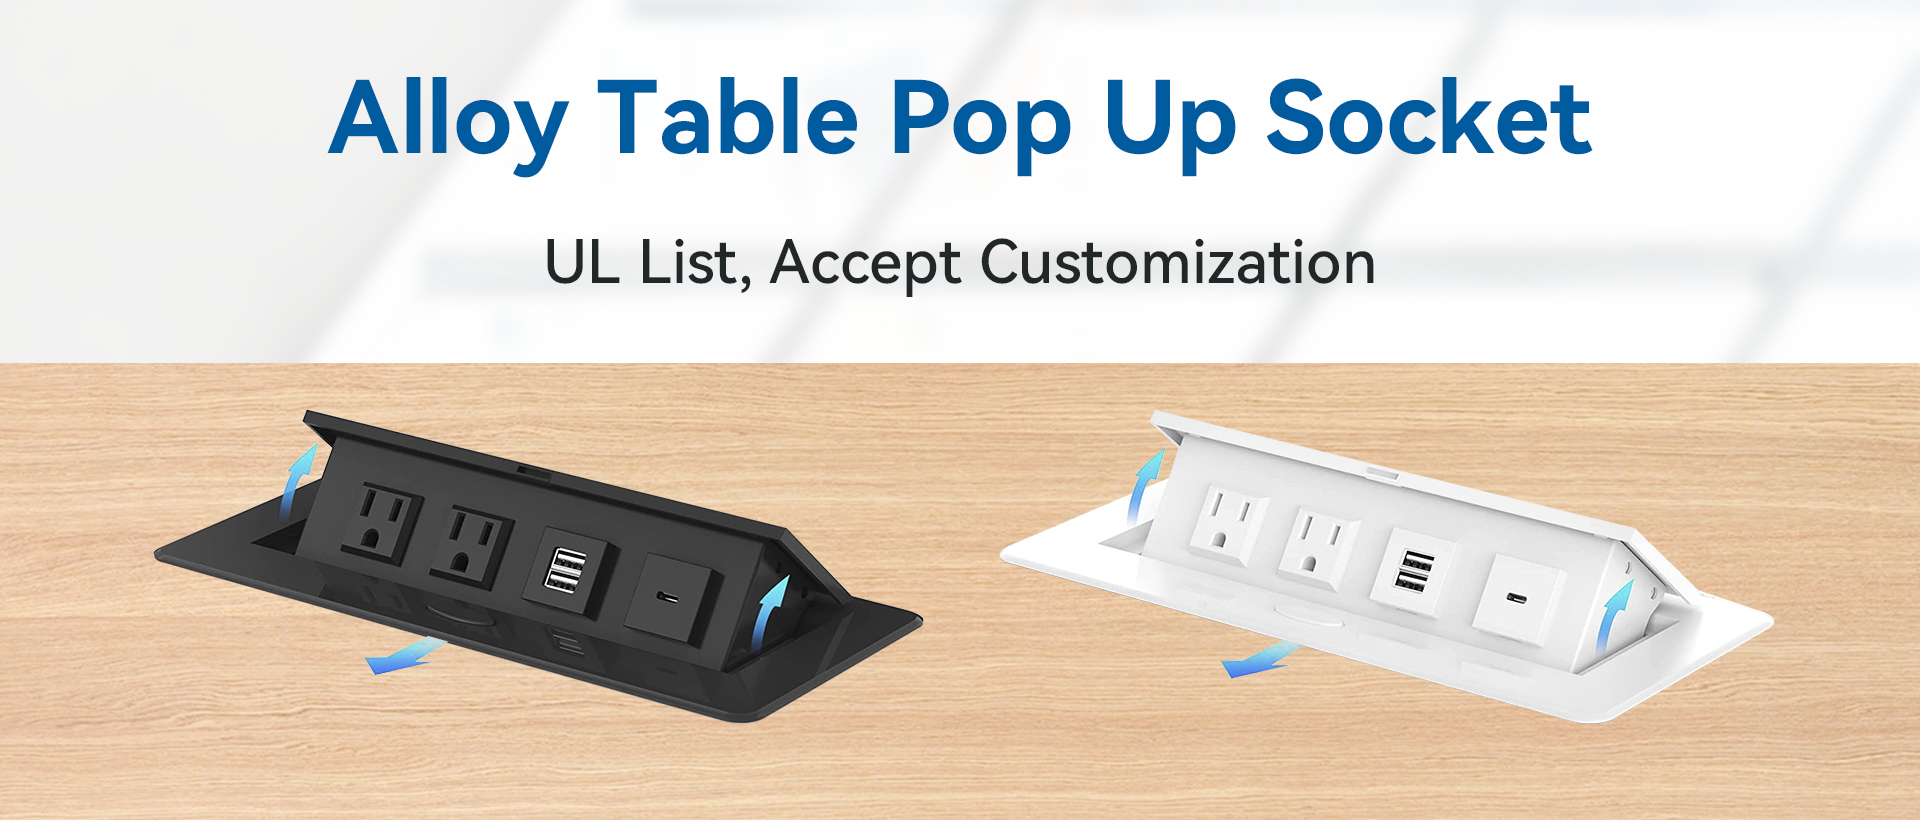 Alloy Pop Up Power Socket for table conference desks